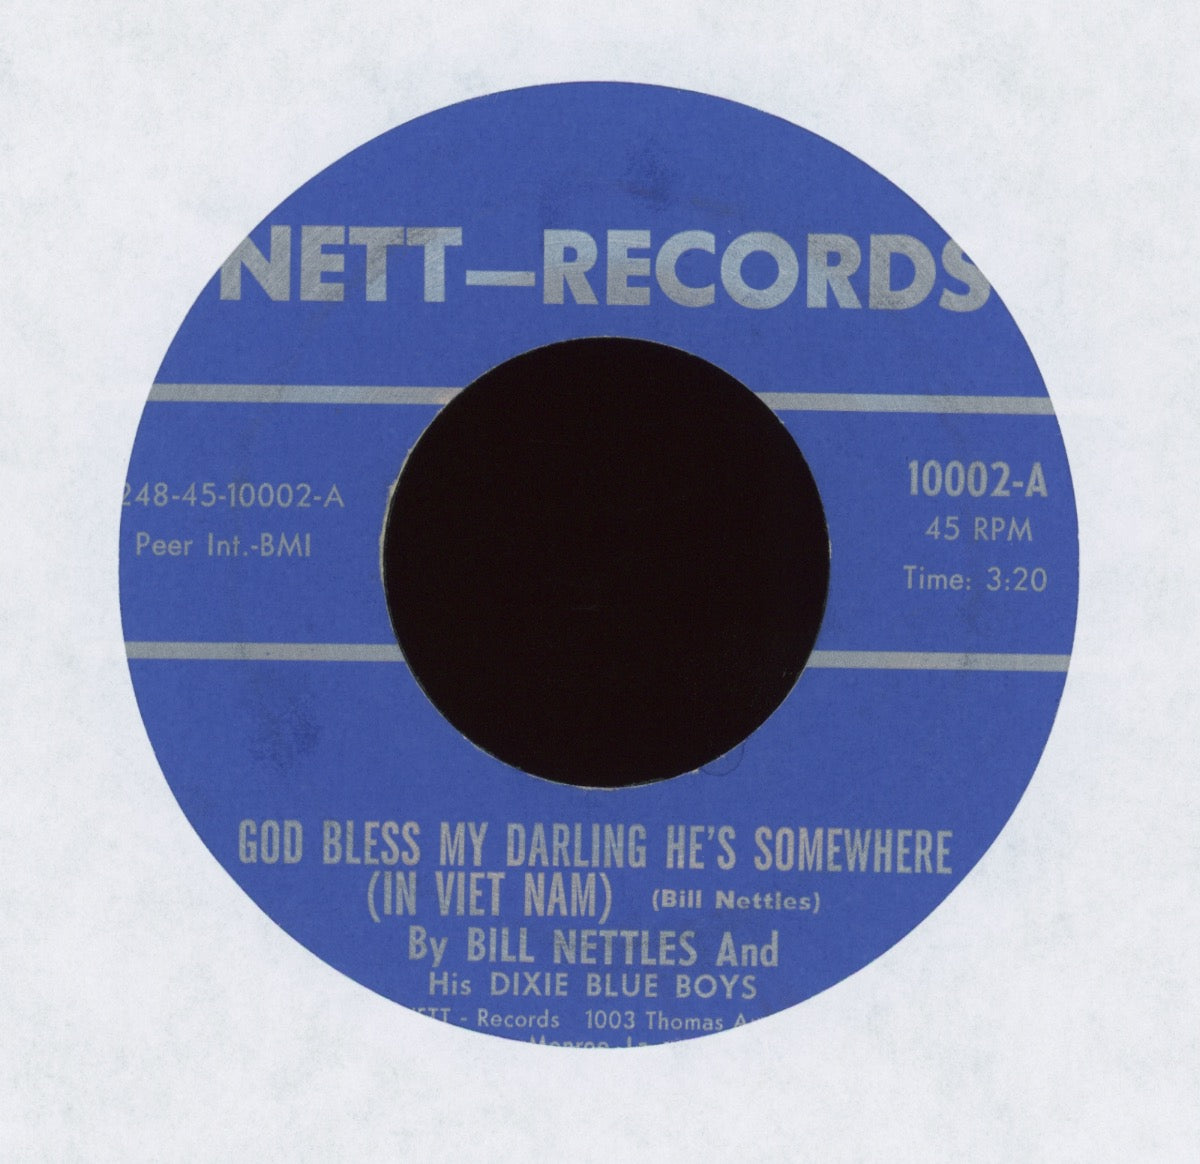 Bill Nettles And His Dixie Blue Boys - Got A Lot Of Lovin' To Do on Nett